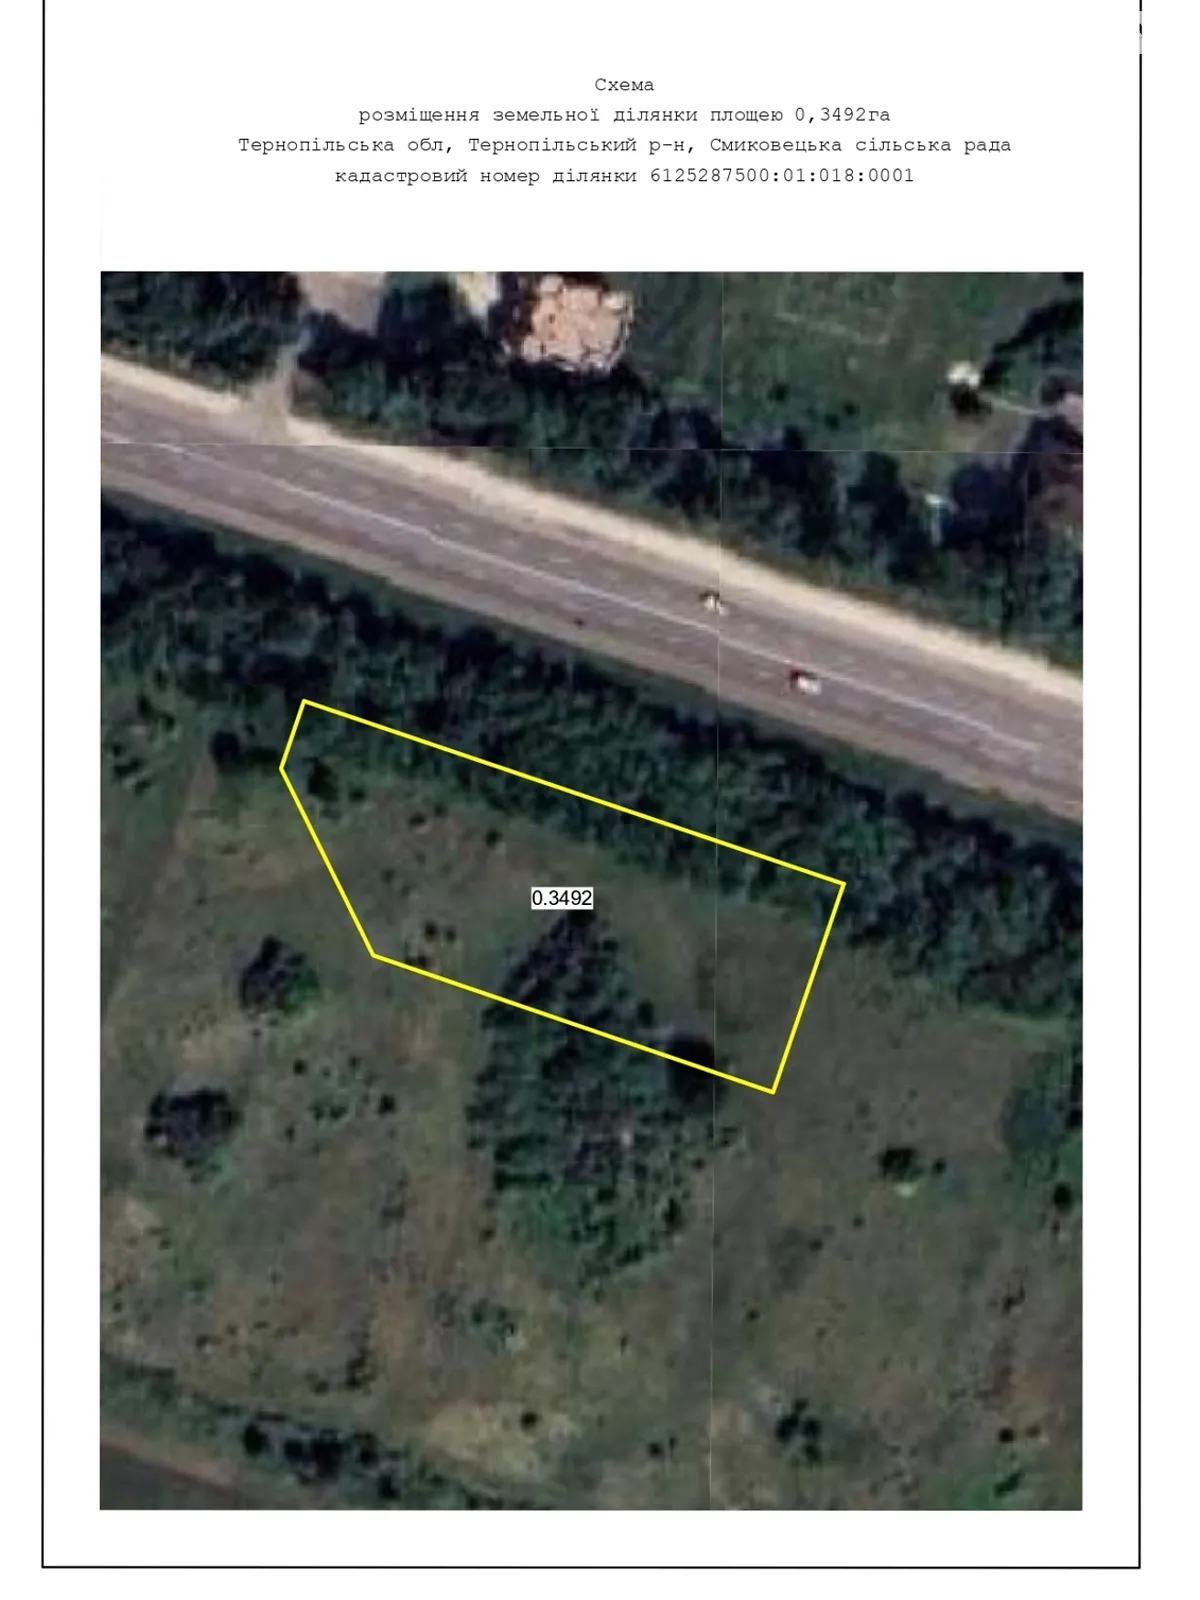 Сдается в аренду земельный участок 0.35 соток в Тернопольской области - фото 3